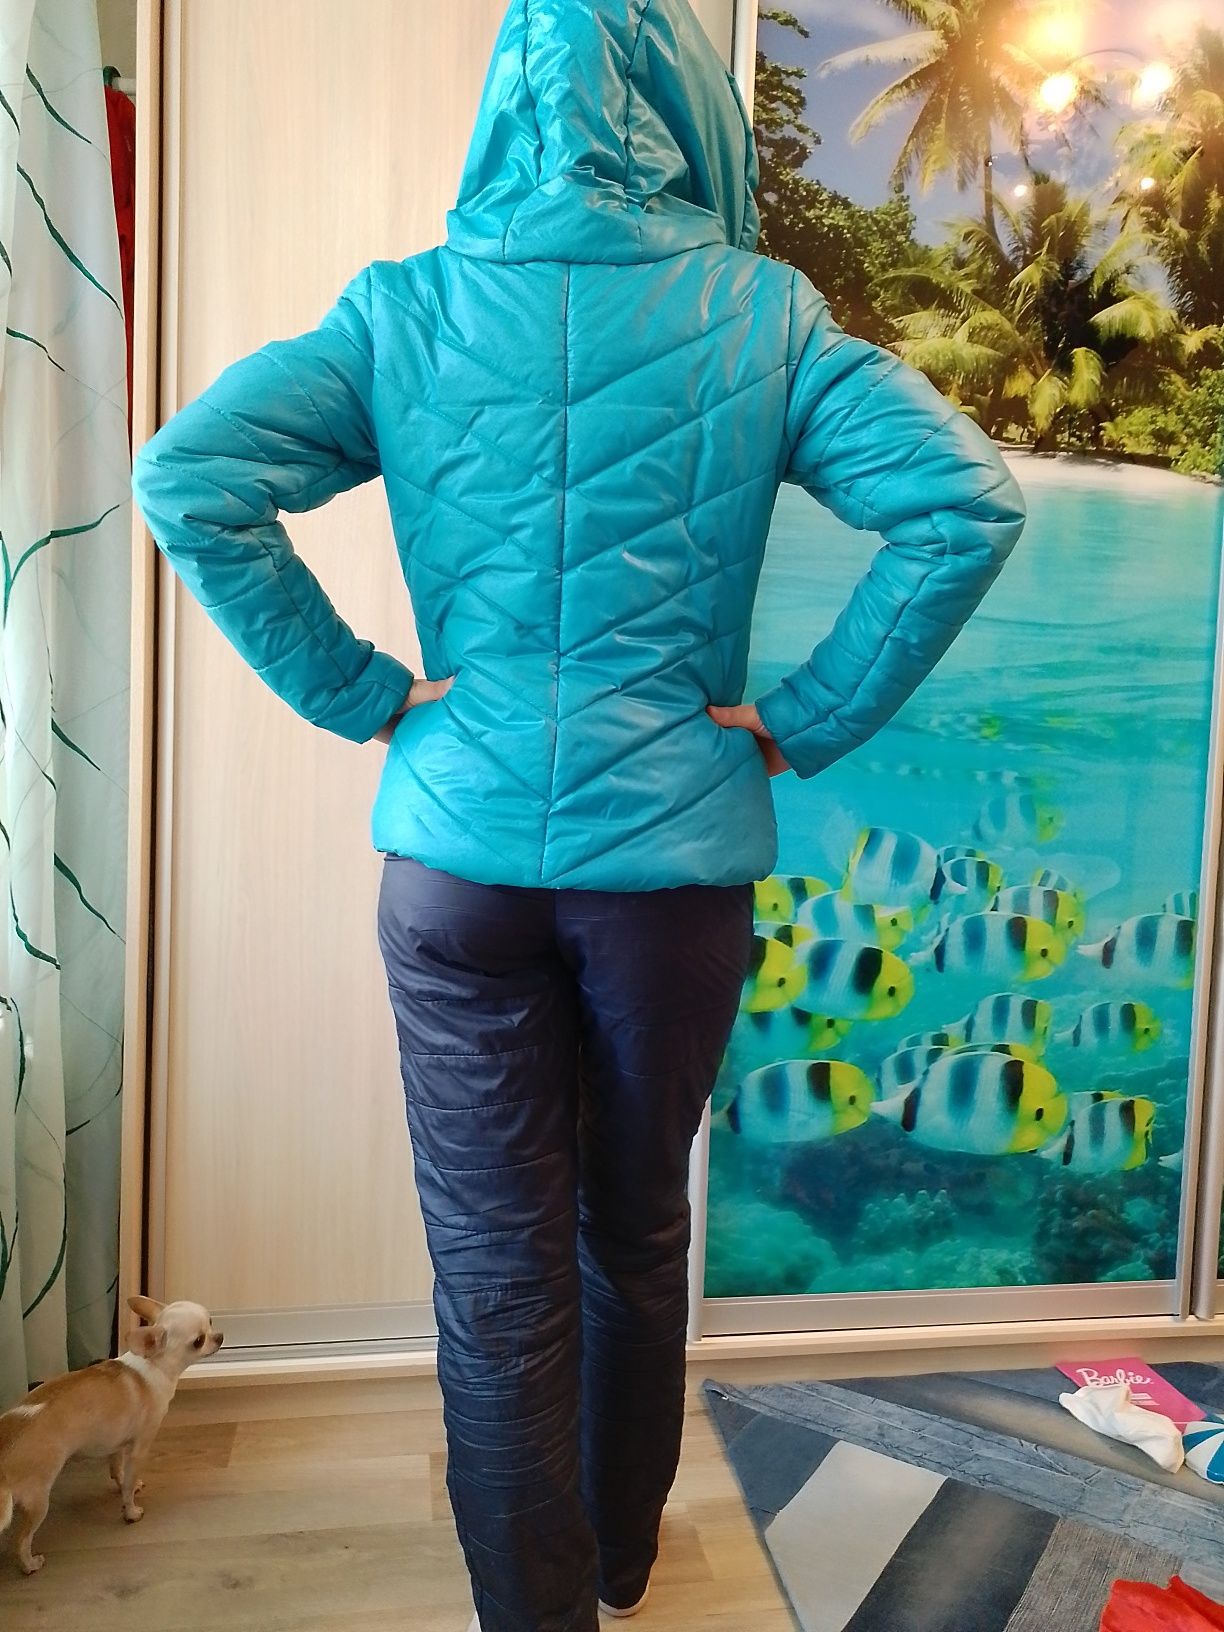 Комплект зимовий (куртка+ штани+чоботи). Розмір 42. Комплект зимний